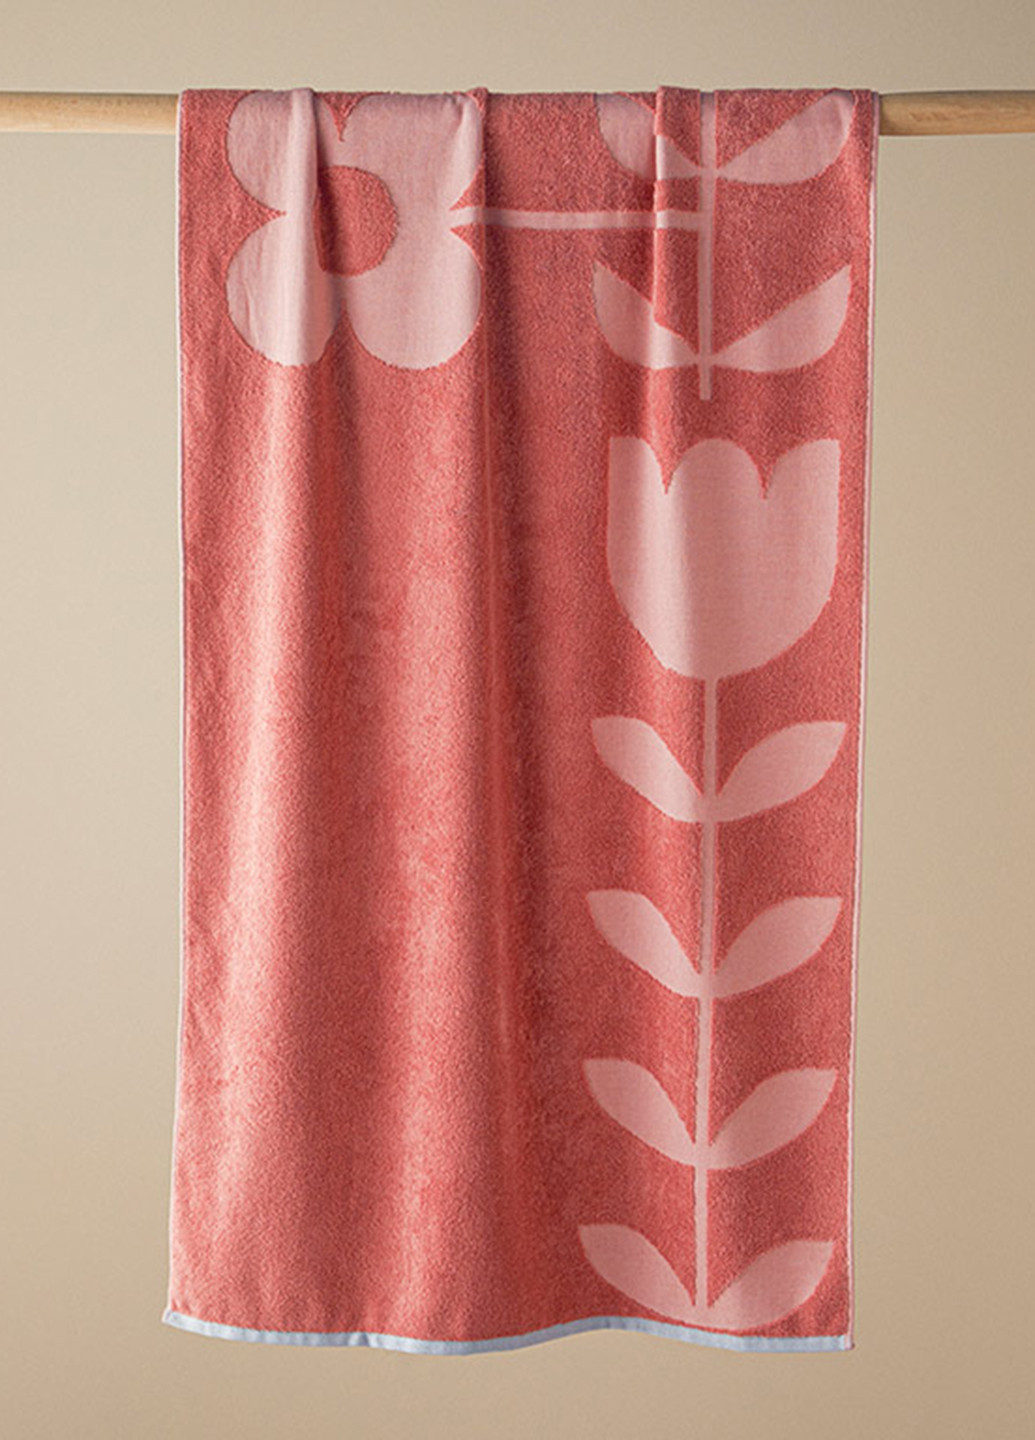 English Home полотенце, 70х140 см однотонный розовый производство - Турция